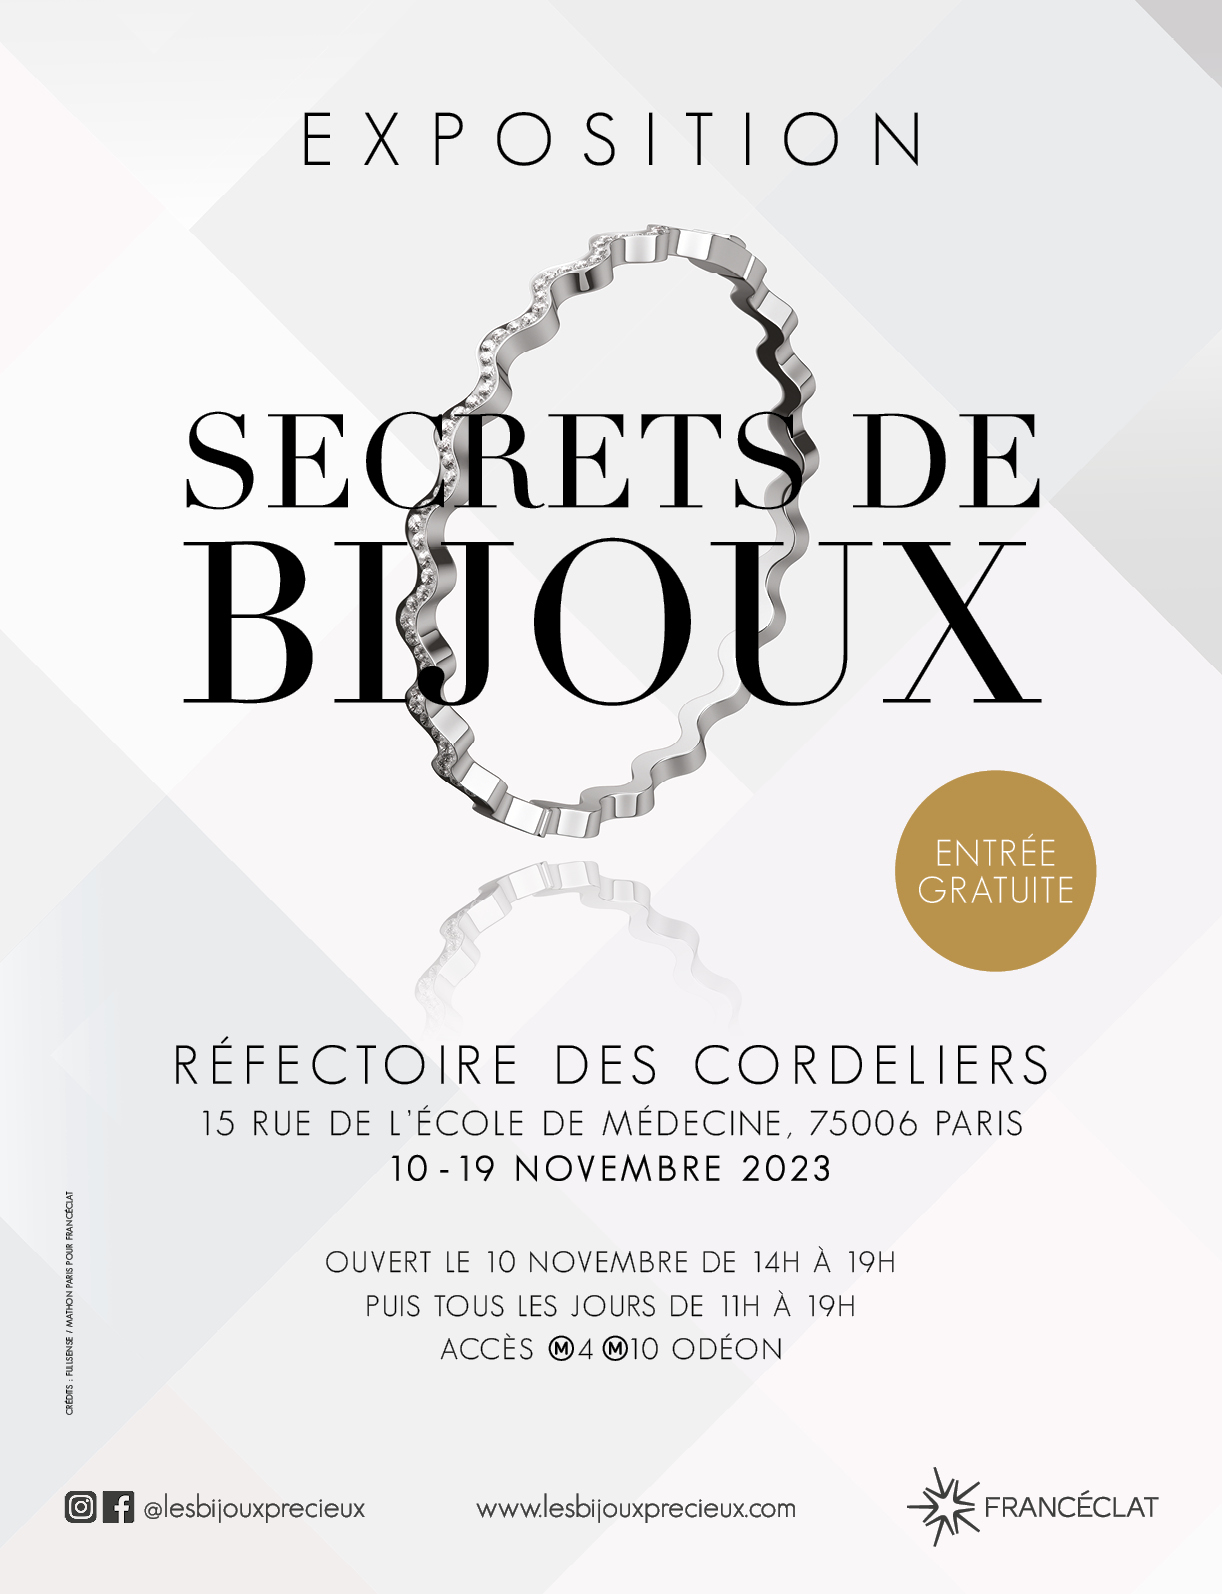 EXPO SECRETS DE BIJOUX - AFFICHE A4